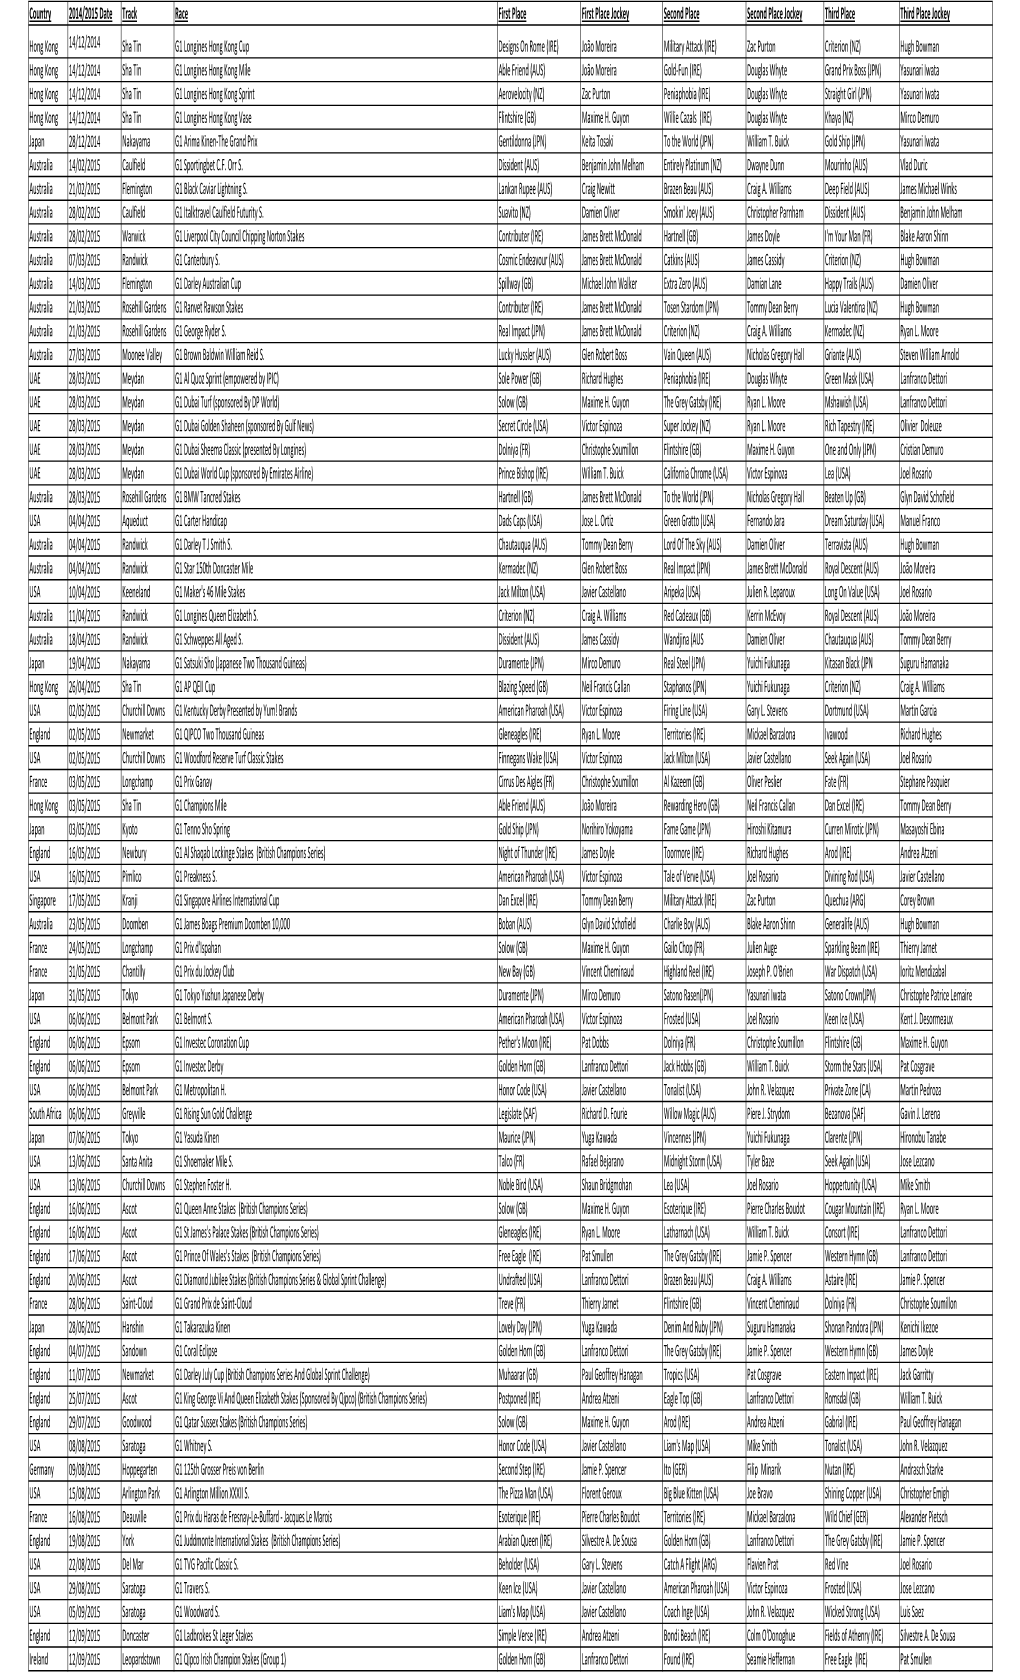 Worlds Top 100 Races 2012-2014.Xlsx